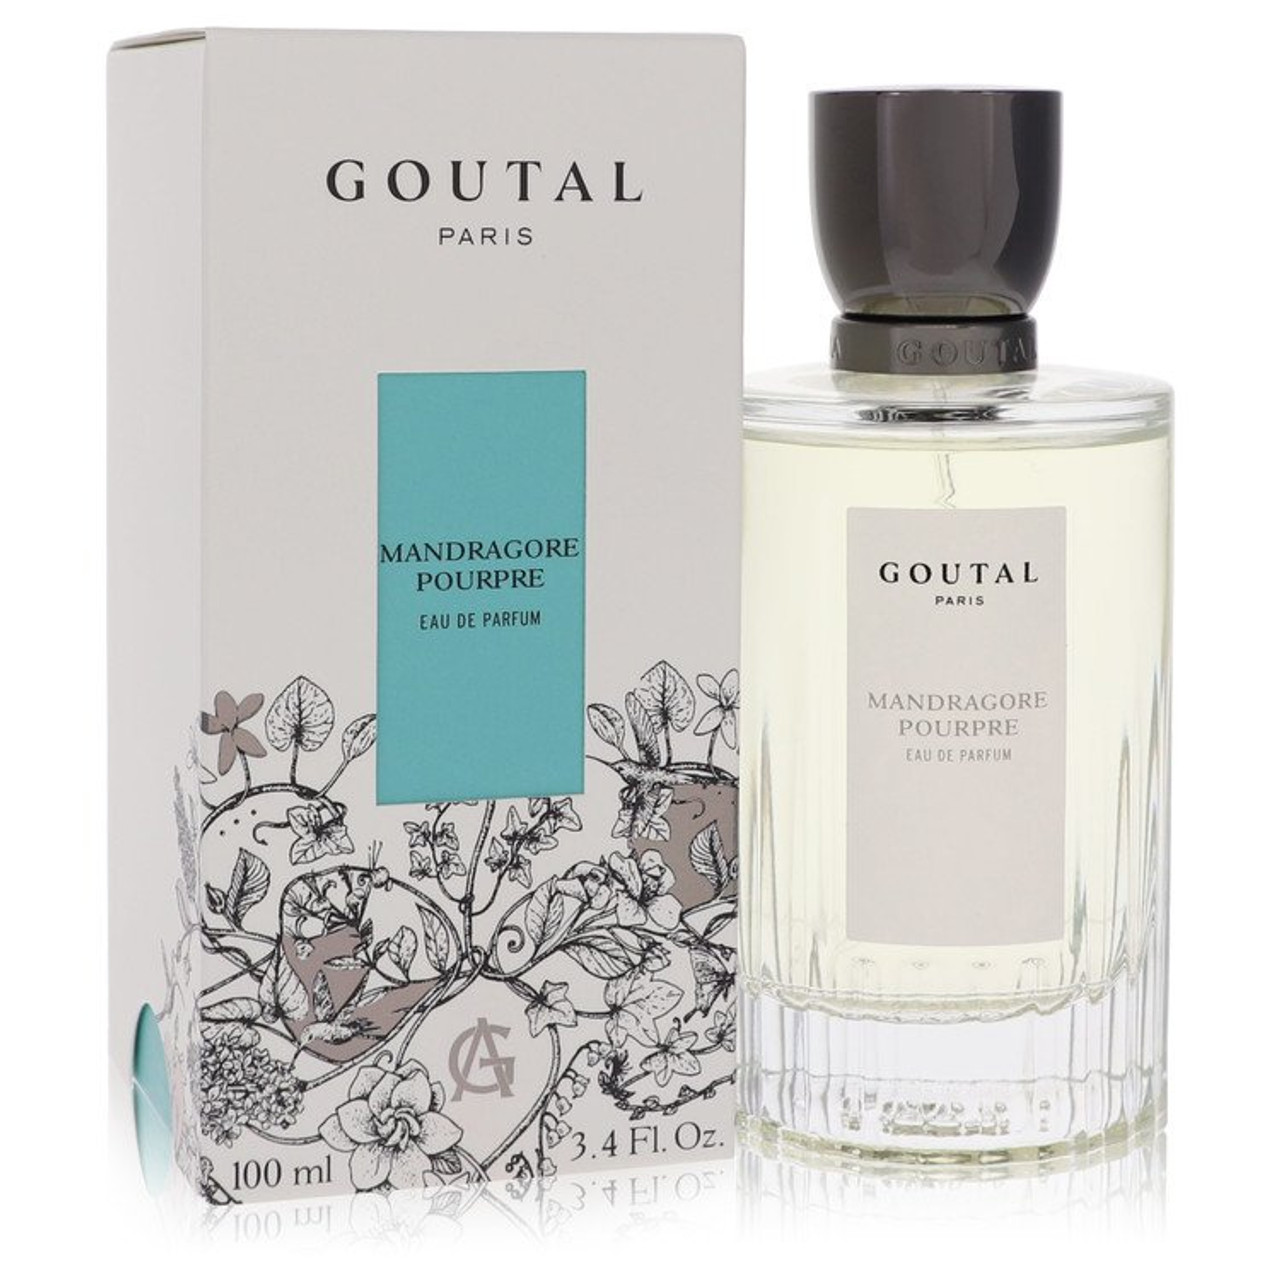 Annick Goutal Grand Amour for Women 3.4 oz Eau de Parfum Spray